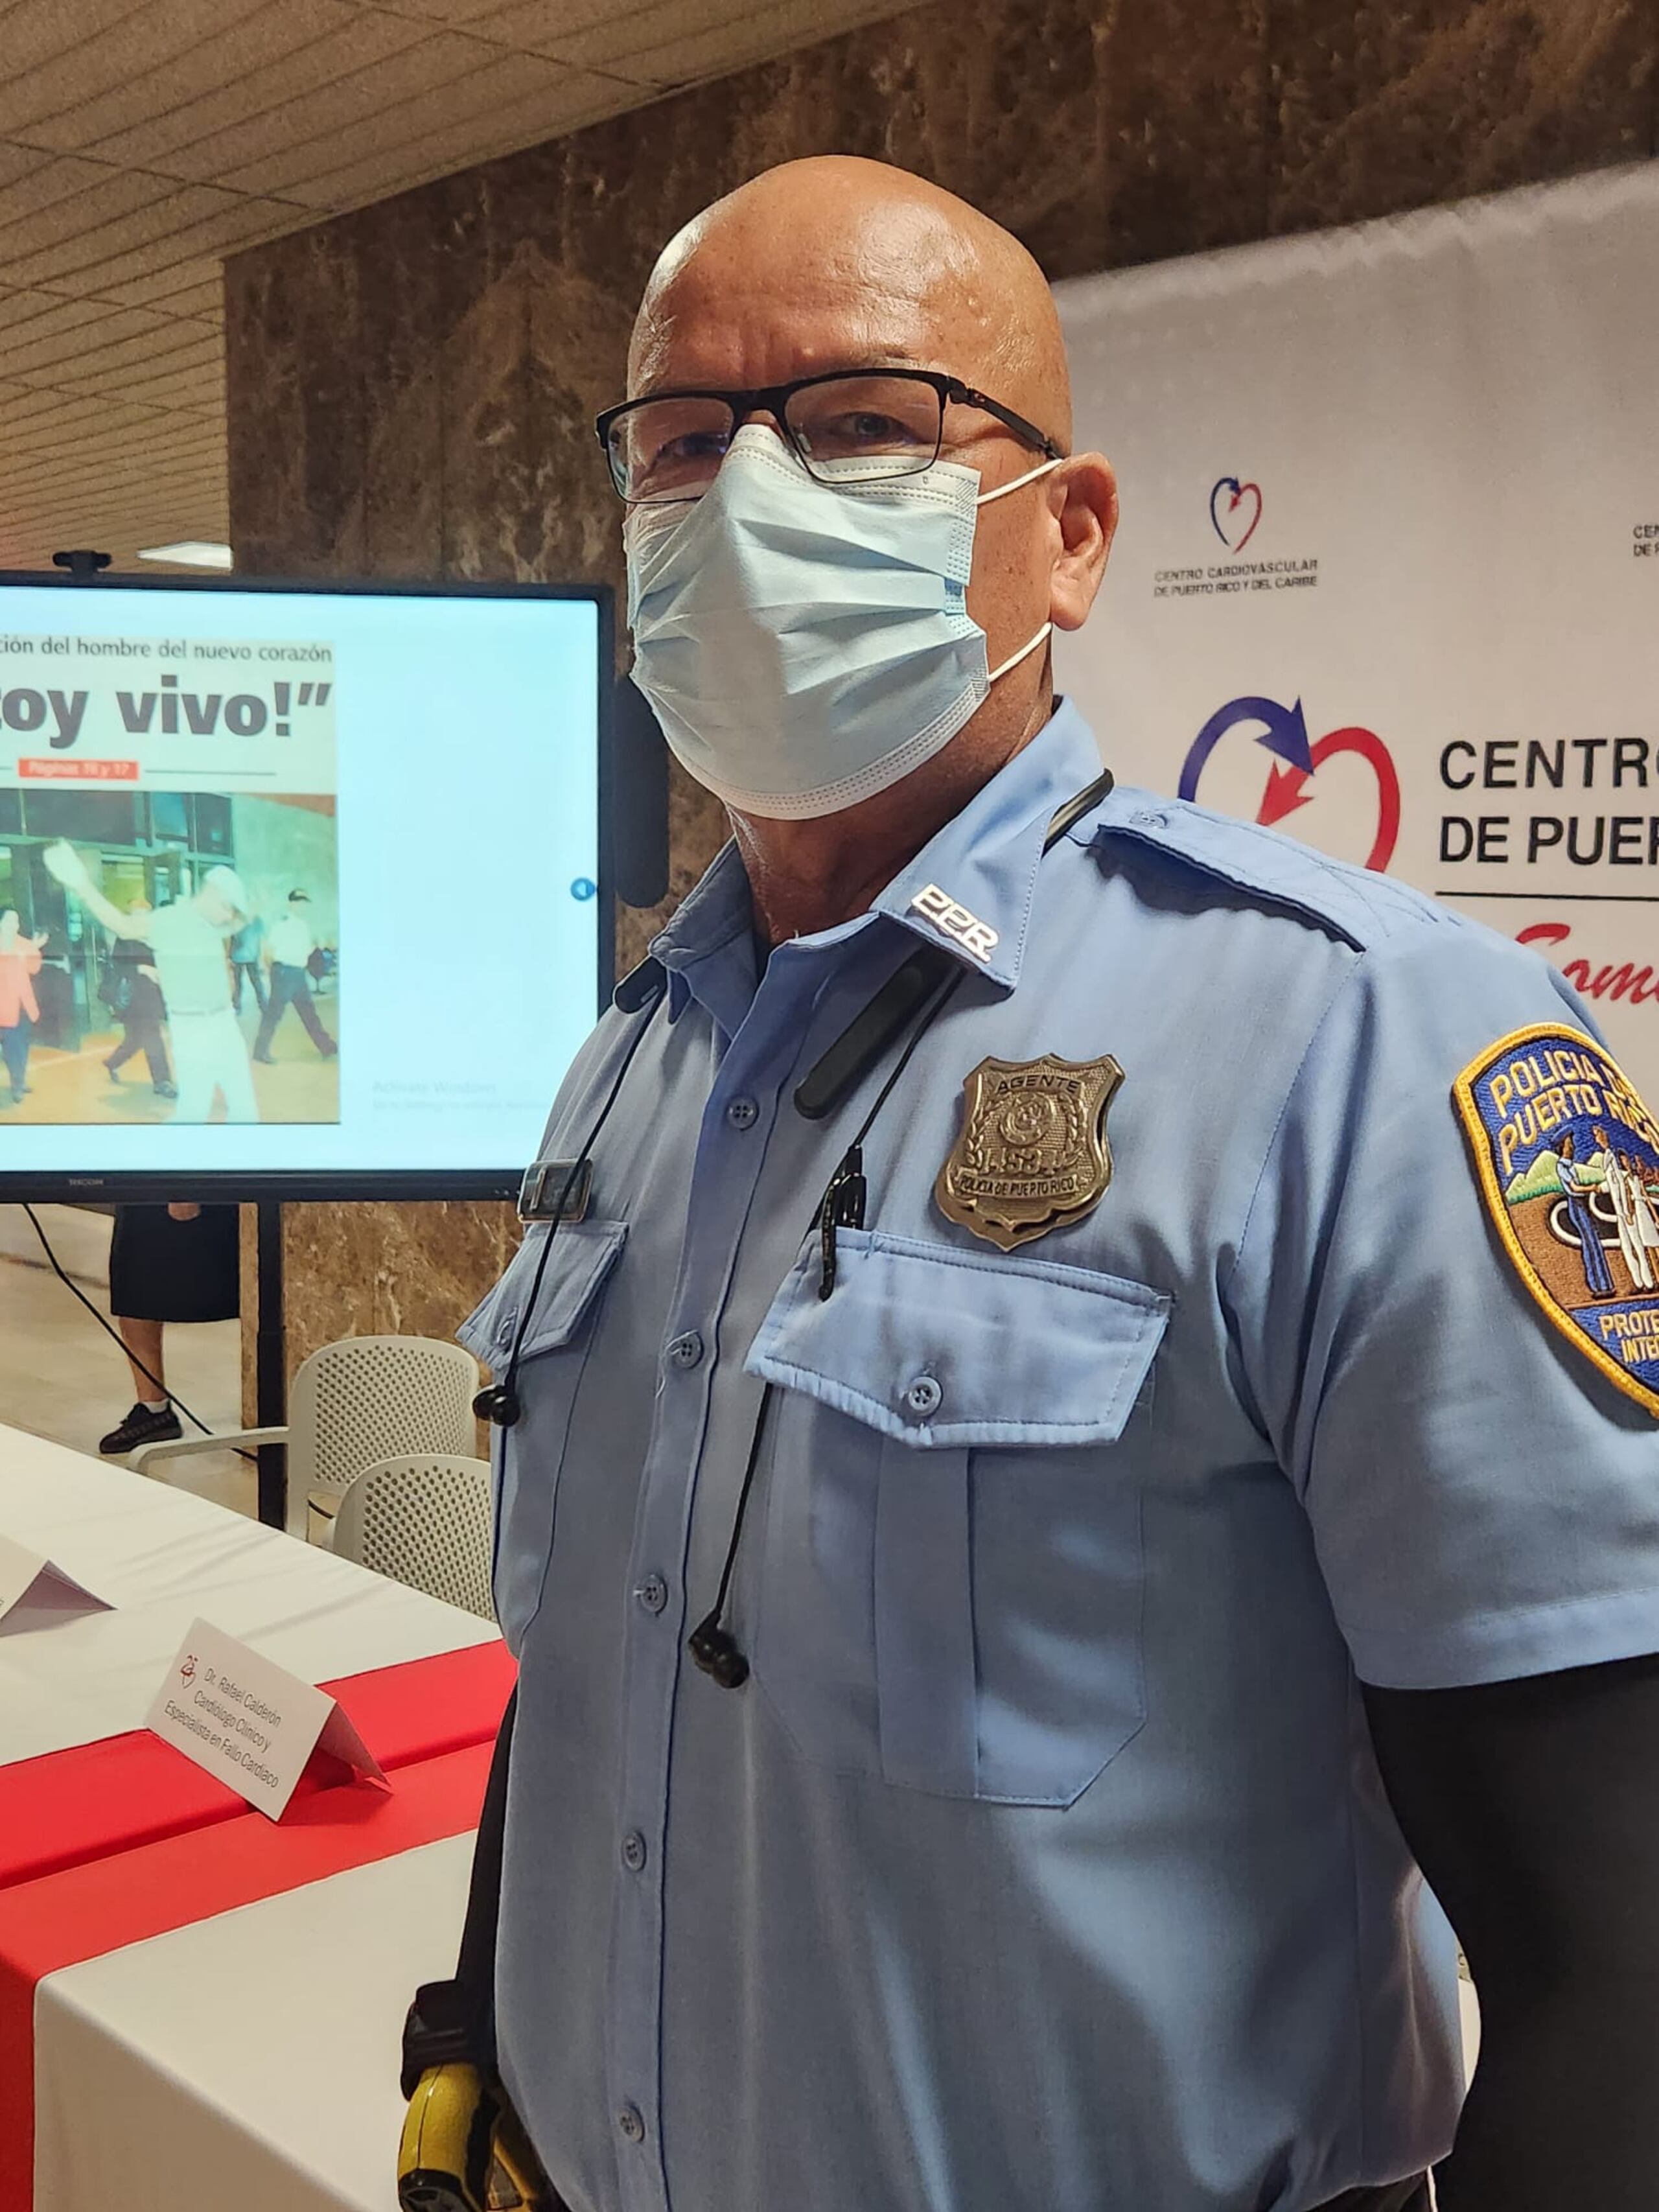 El policía Héctor Cruz Ortiz muy bien podría considerarse un hombre de tres corazones, pues en su caso ha recibido dos trasplantes.